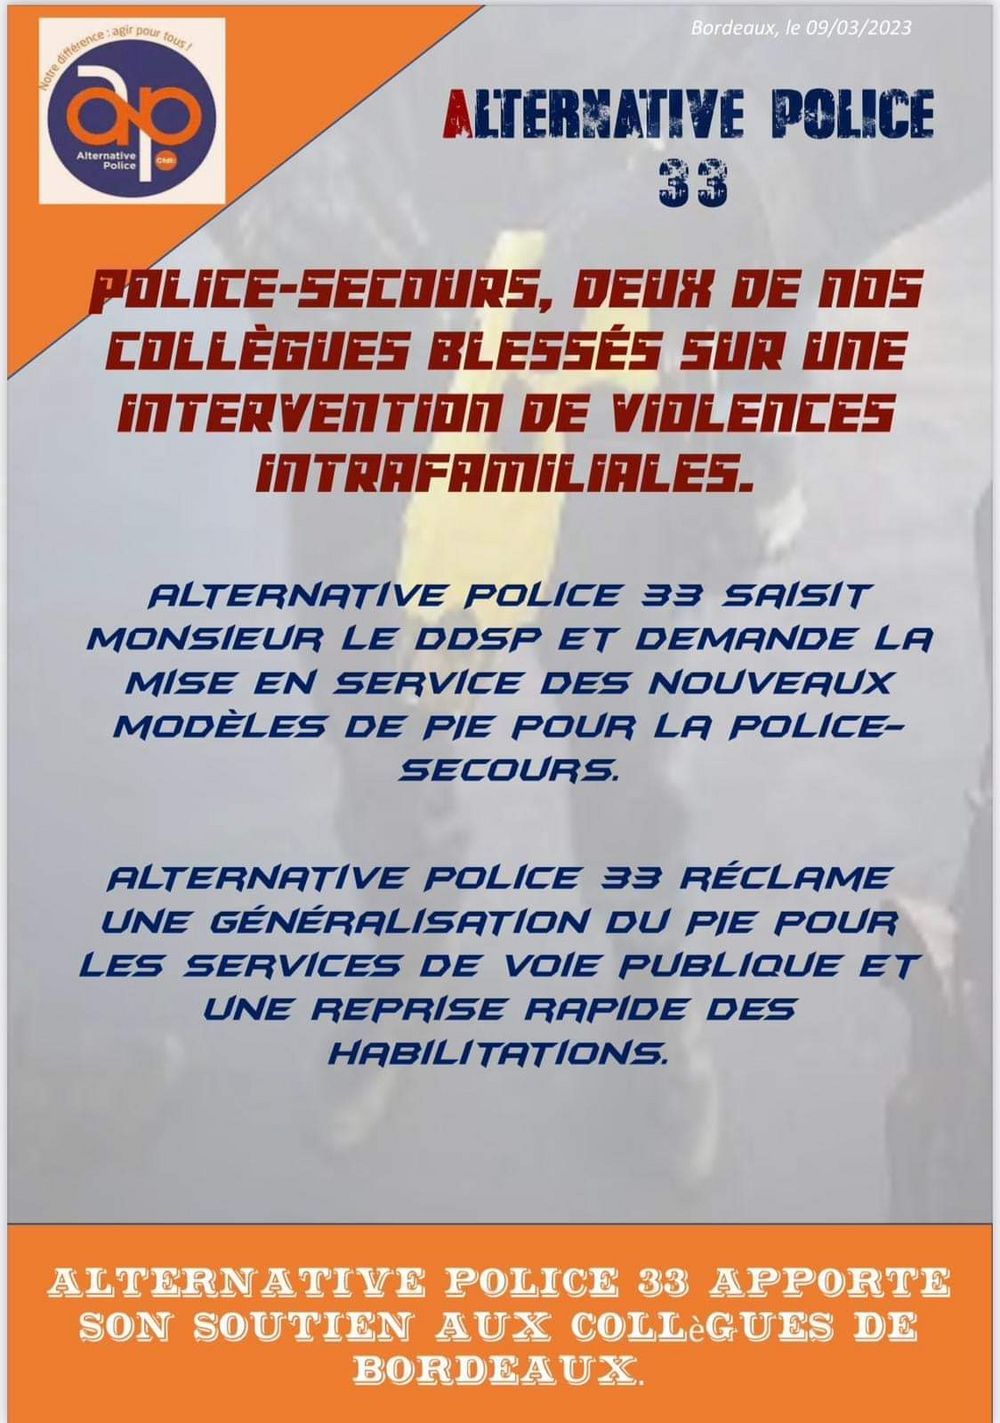 POLICE-SECOURS BORDEAUX